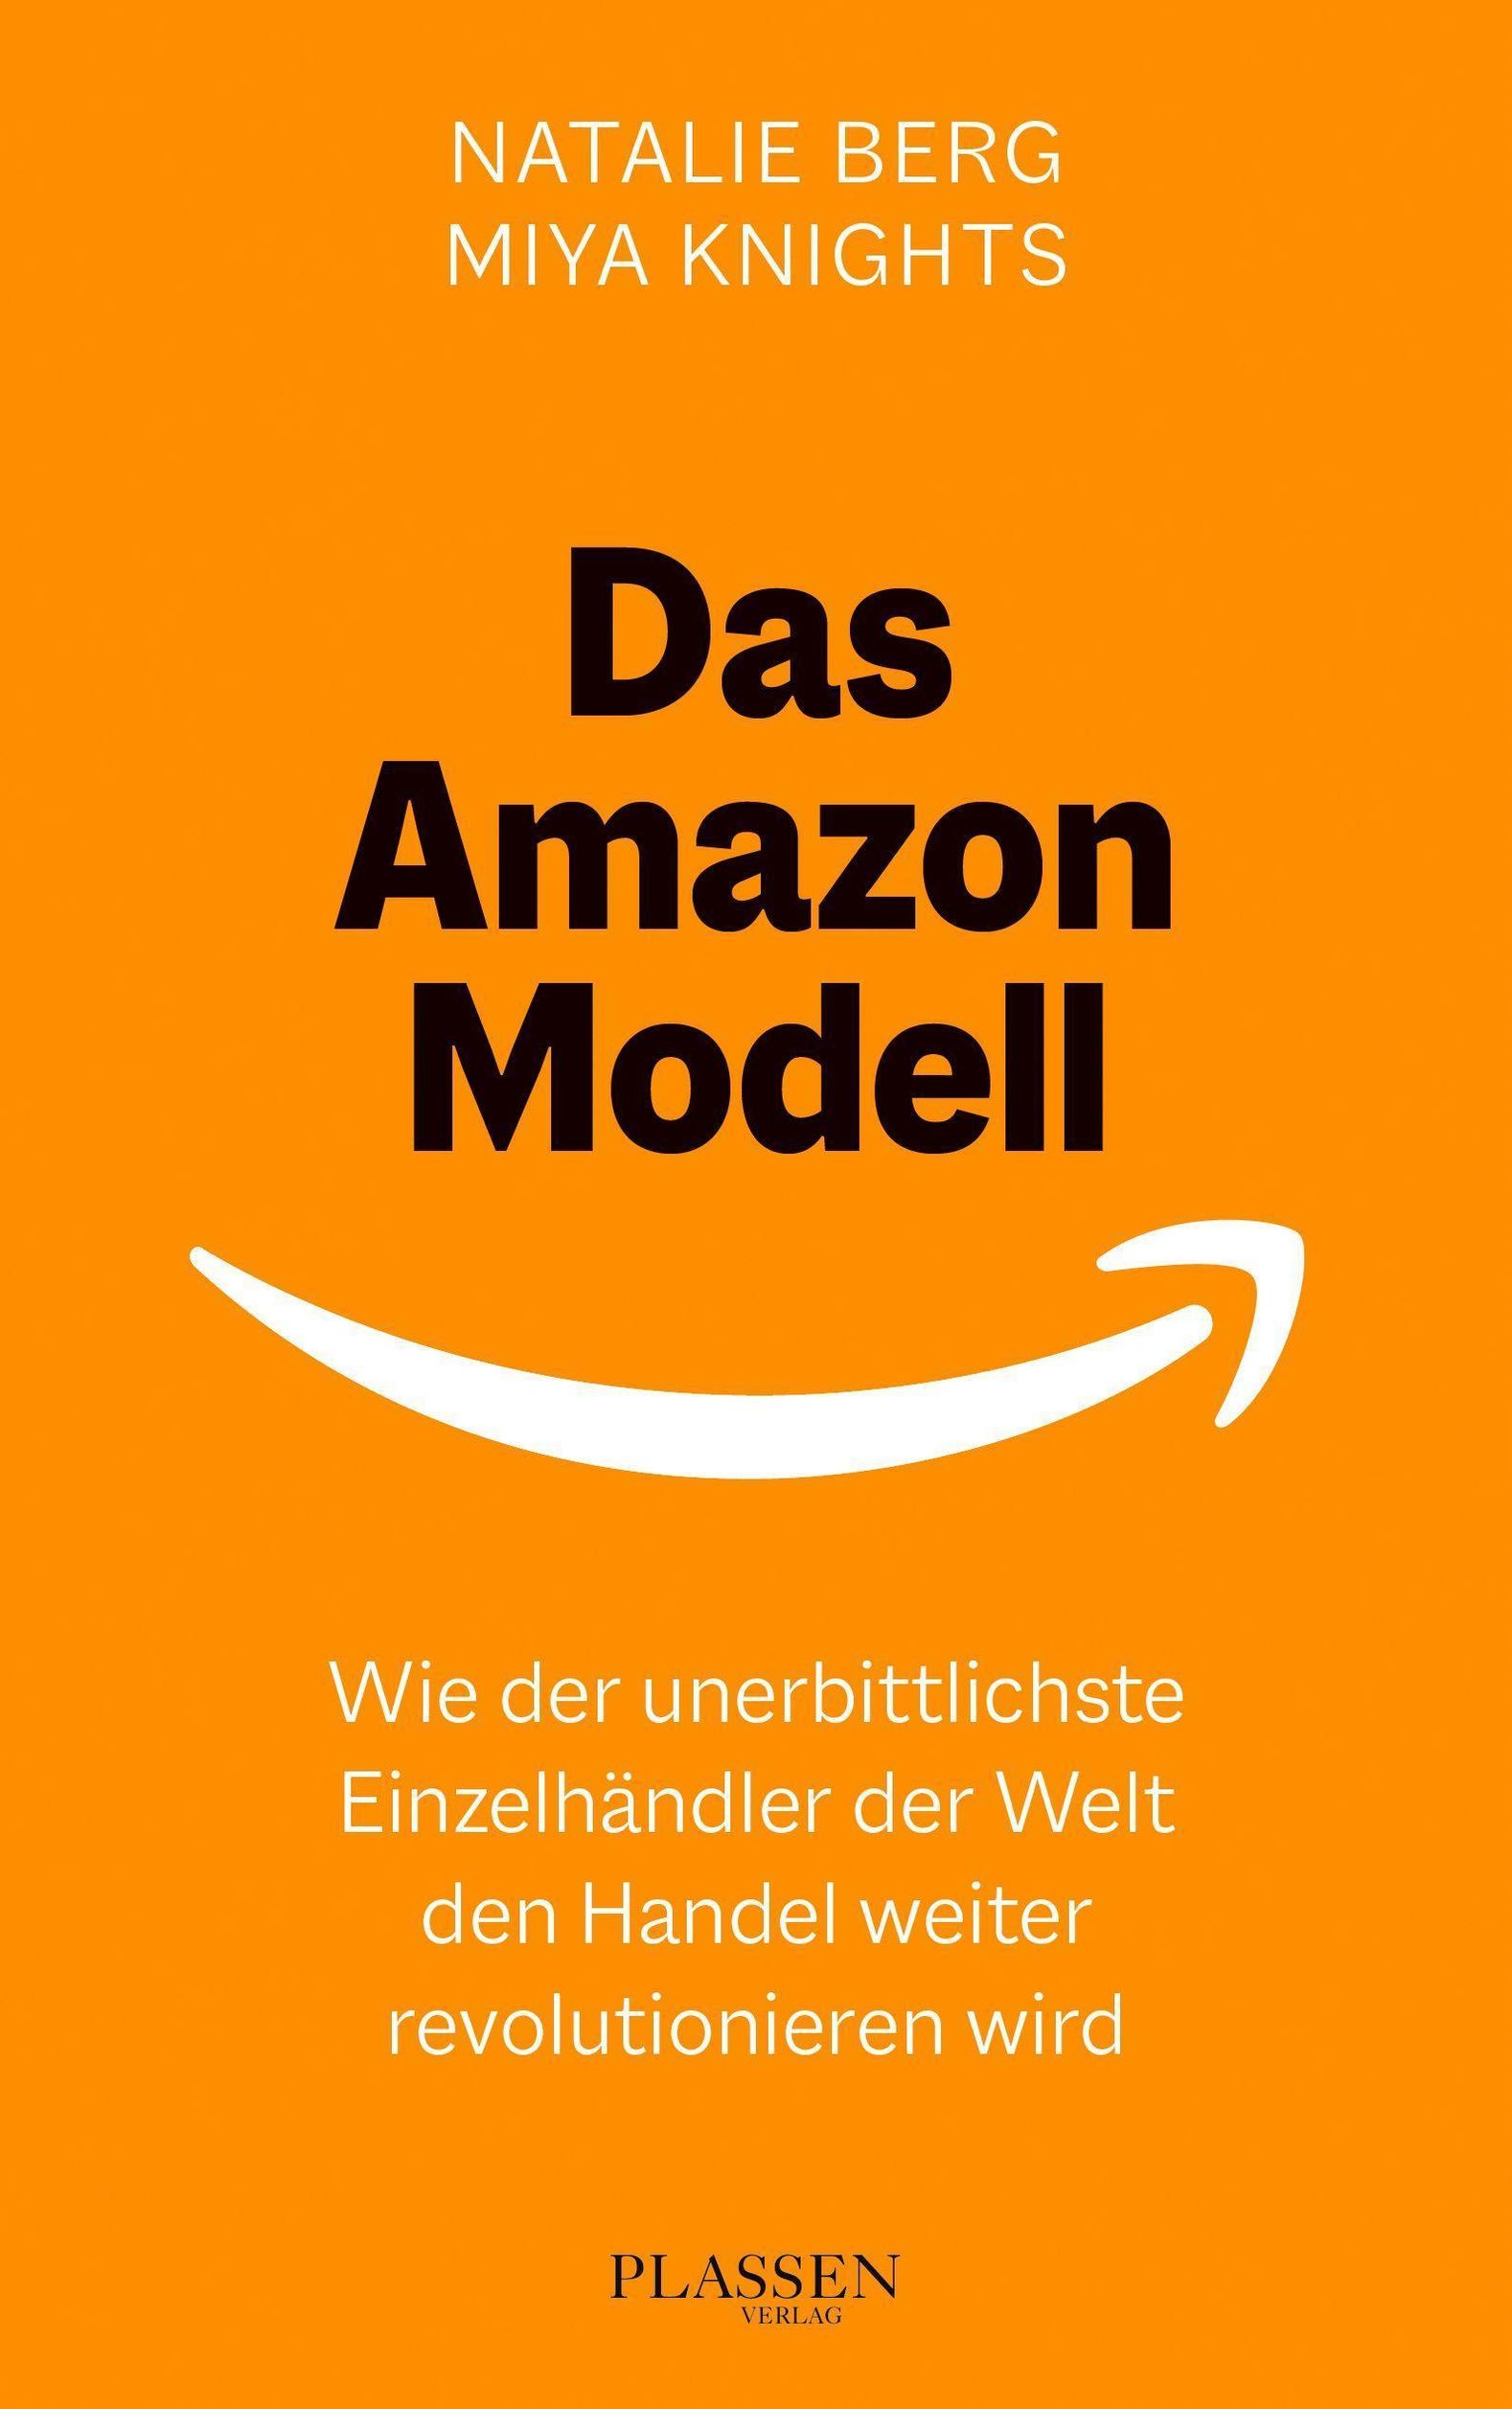 Das Amazon-Modell Buch von Natalie Berg versandkostenfrei bei Weltbild.at